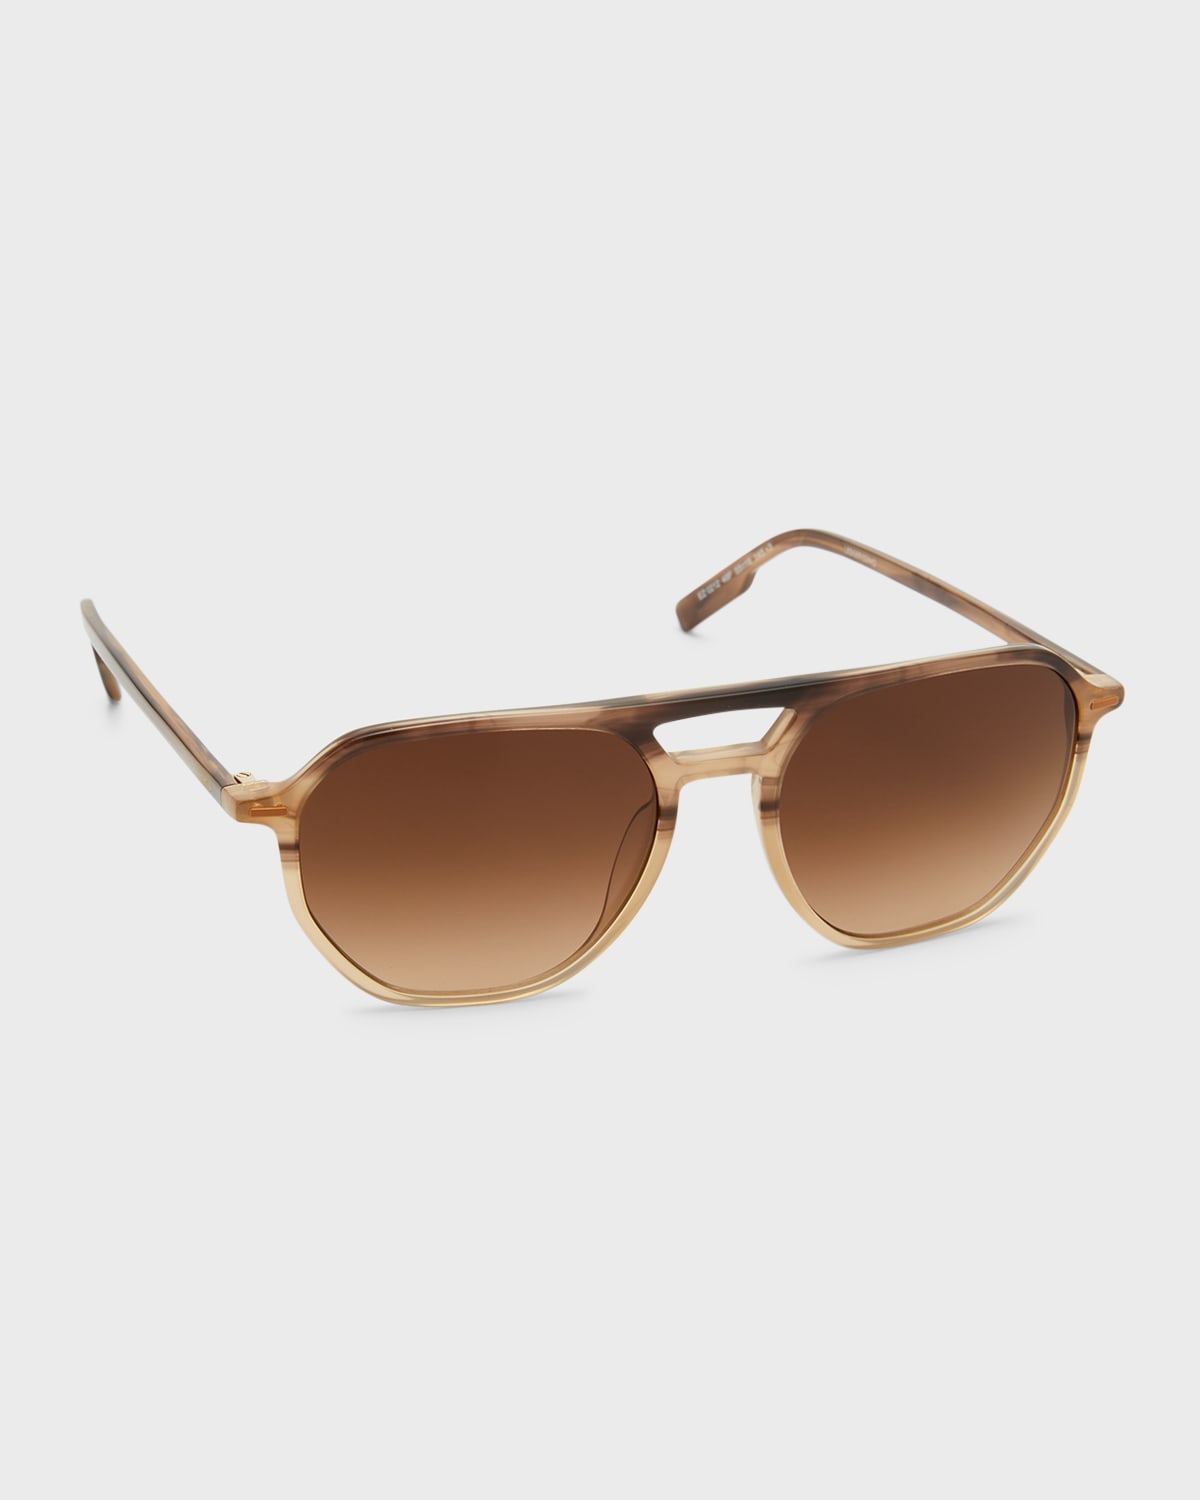 Zegna 55mm Aviator Sunglasses In Striped Brown